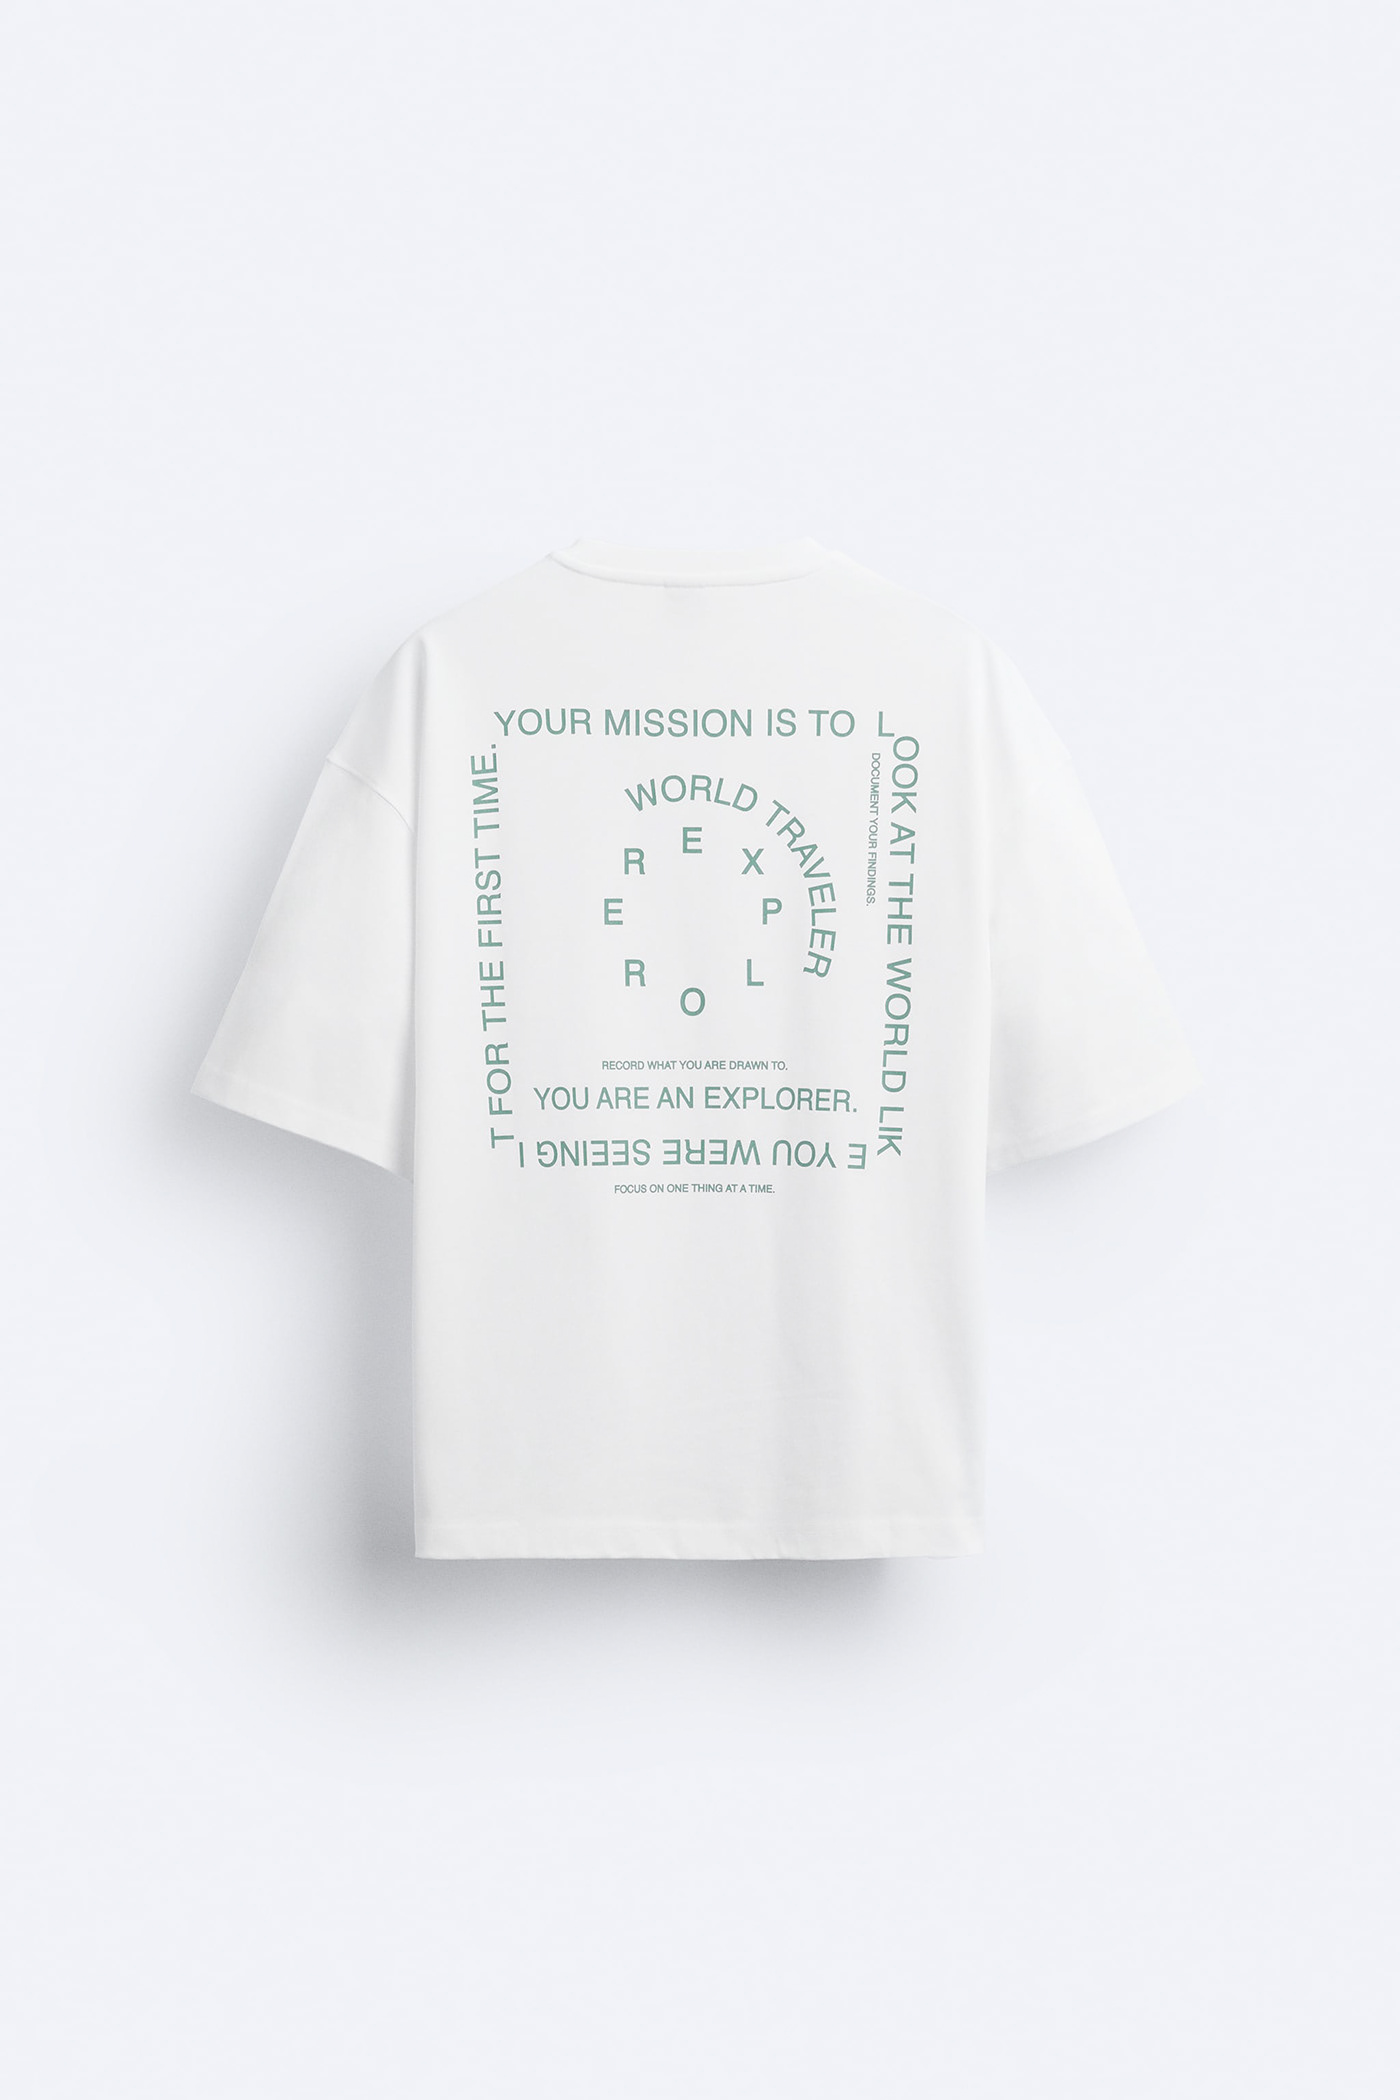 Fashion  Clothing t-shirt Tshirt Design typography  